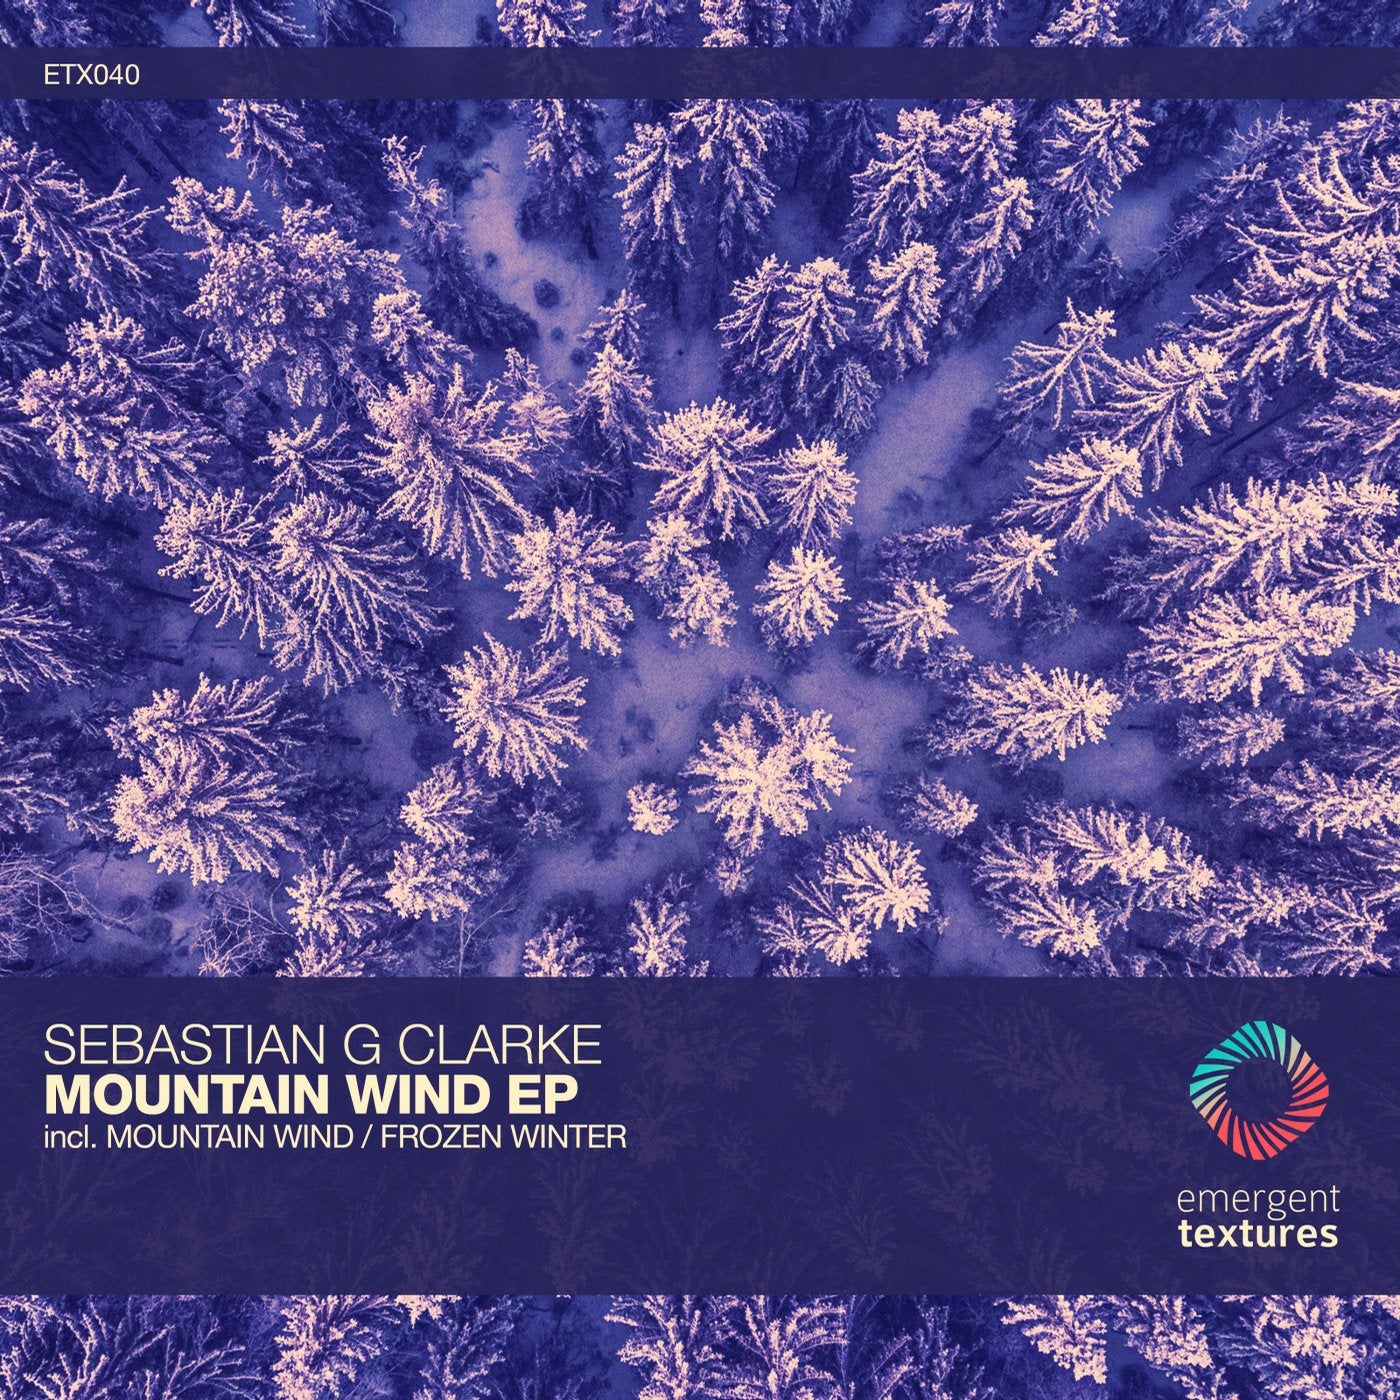 Mountain Wind